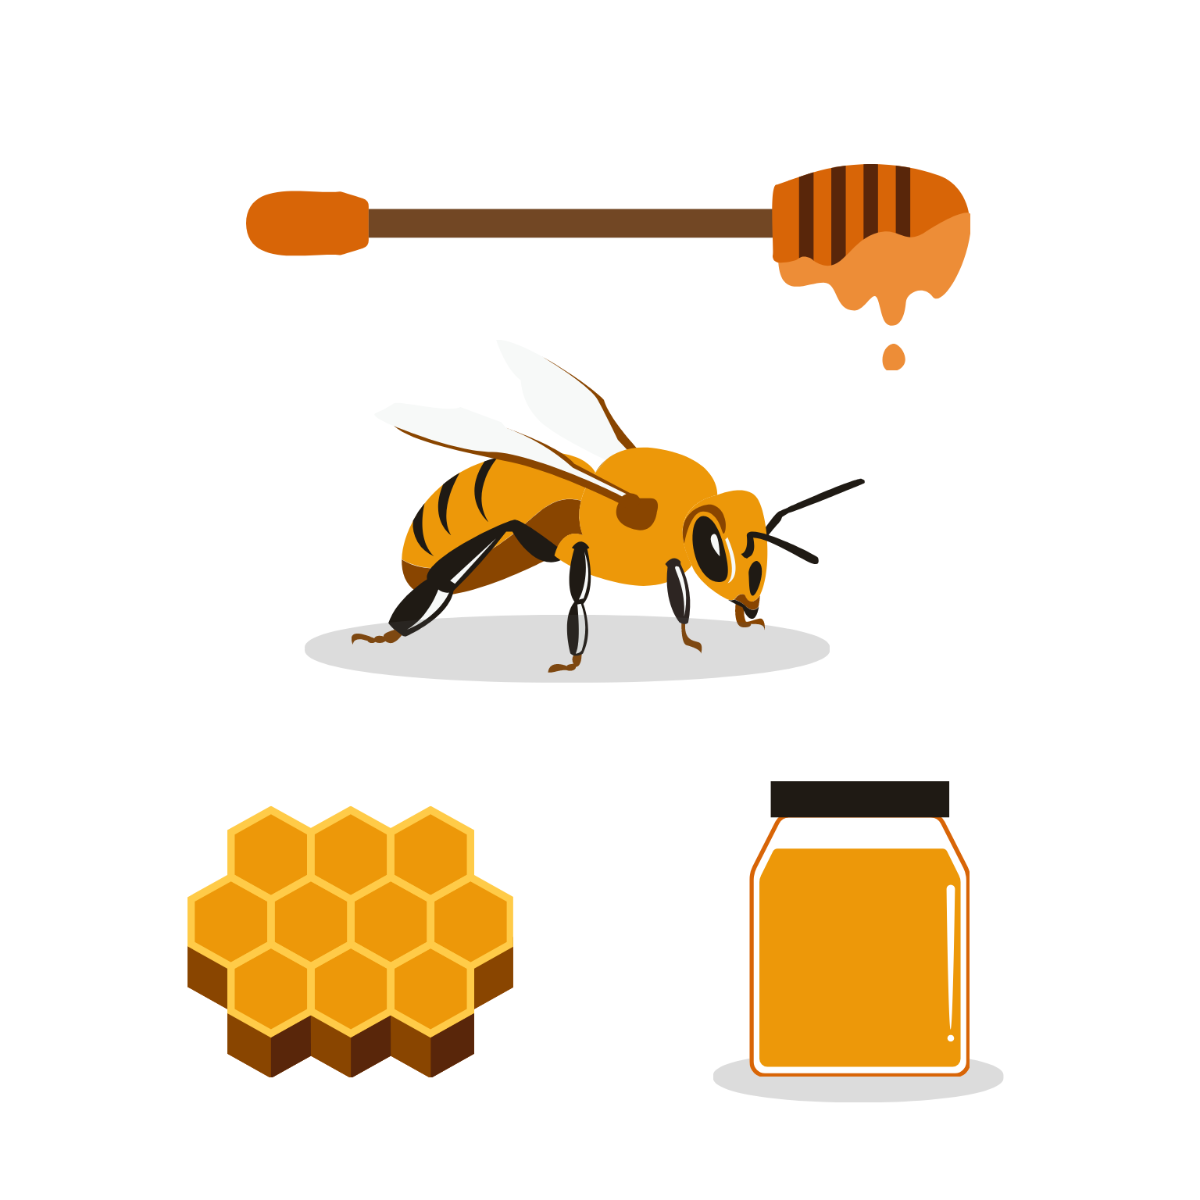 Honey Vector